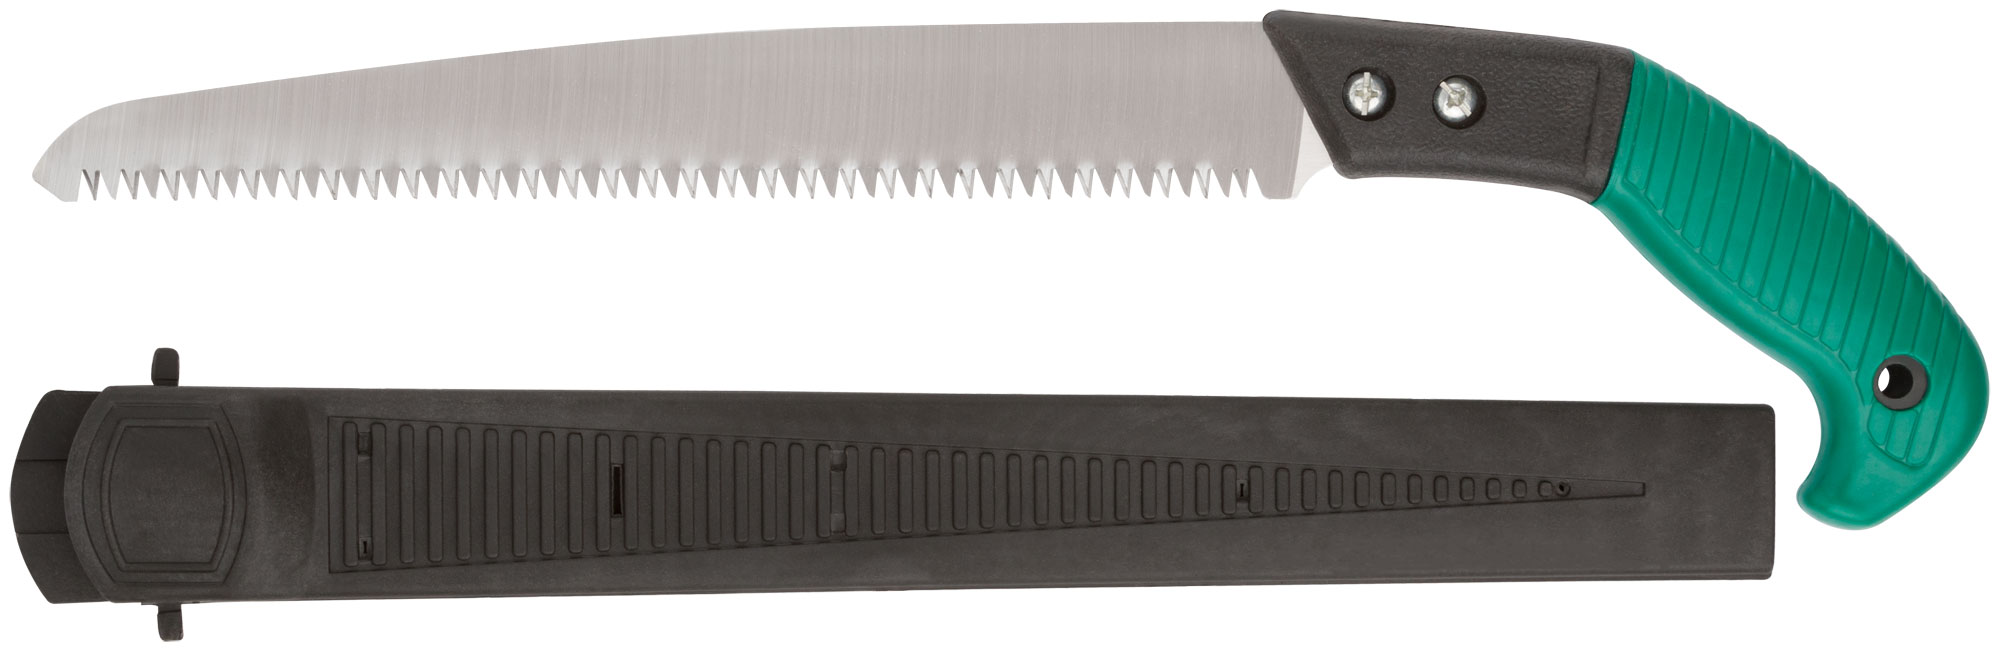 Ножовка садовая с ножнами, 300 мм, FIT 40595 ножовка садовая 300 мм деревянная ручка